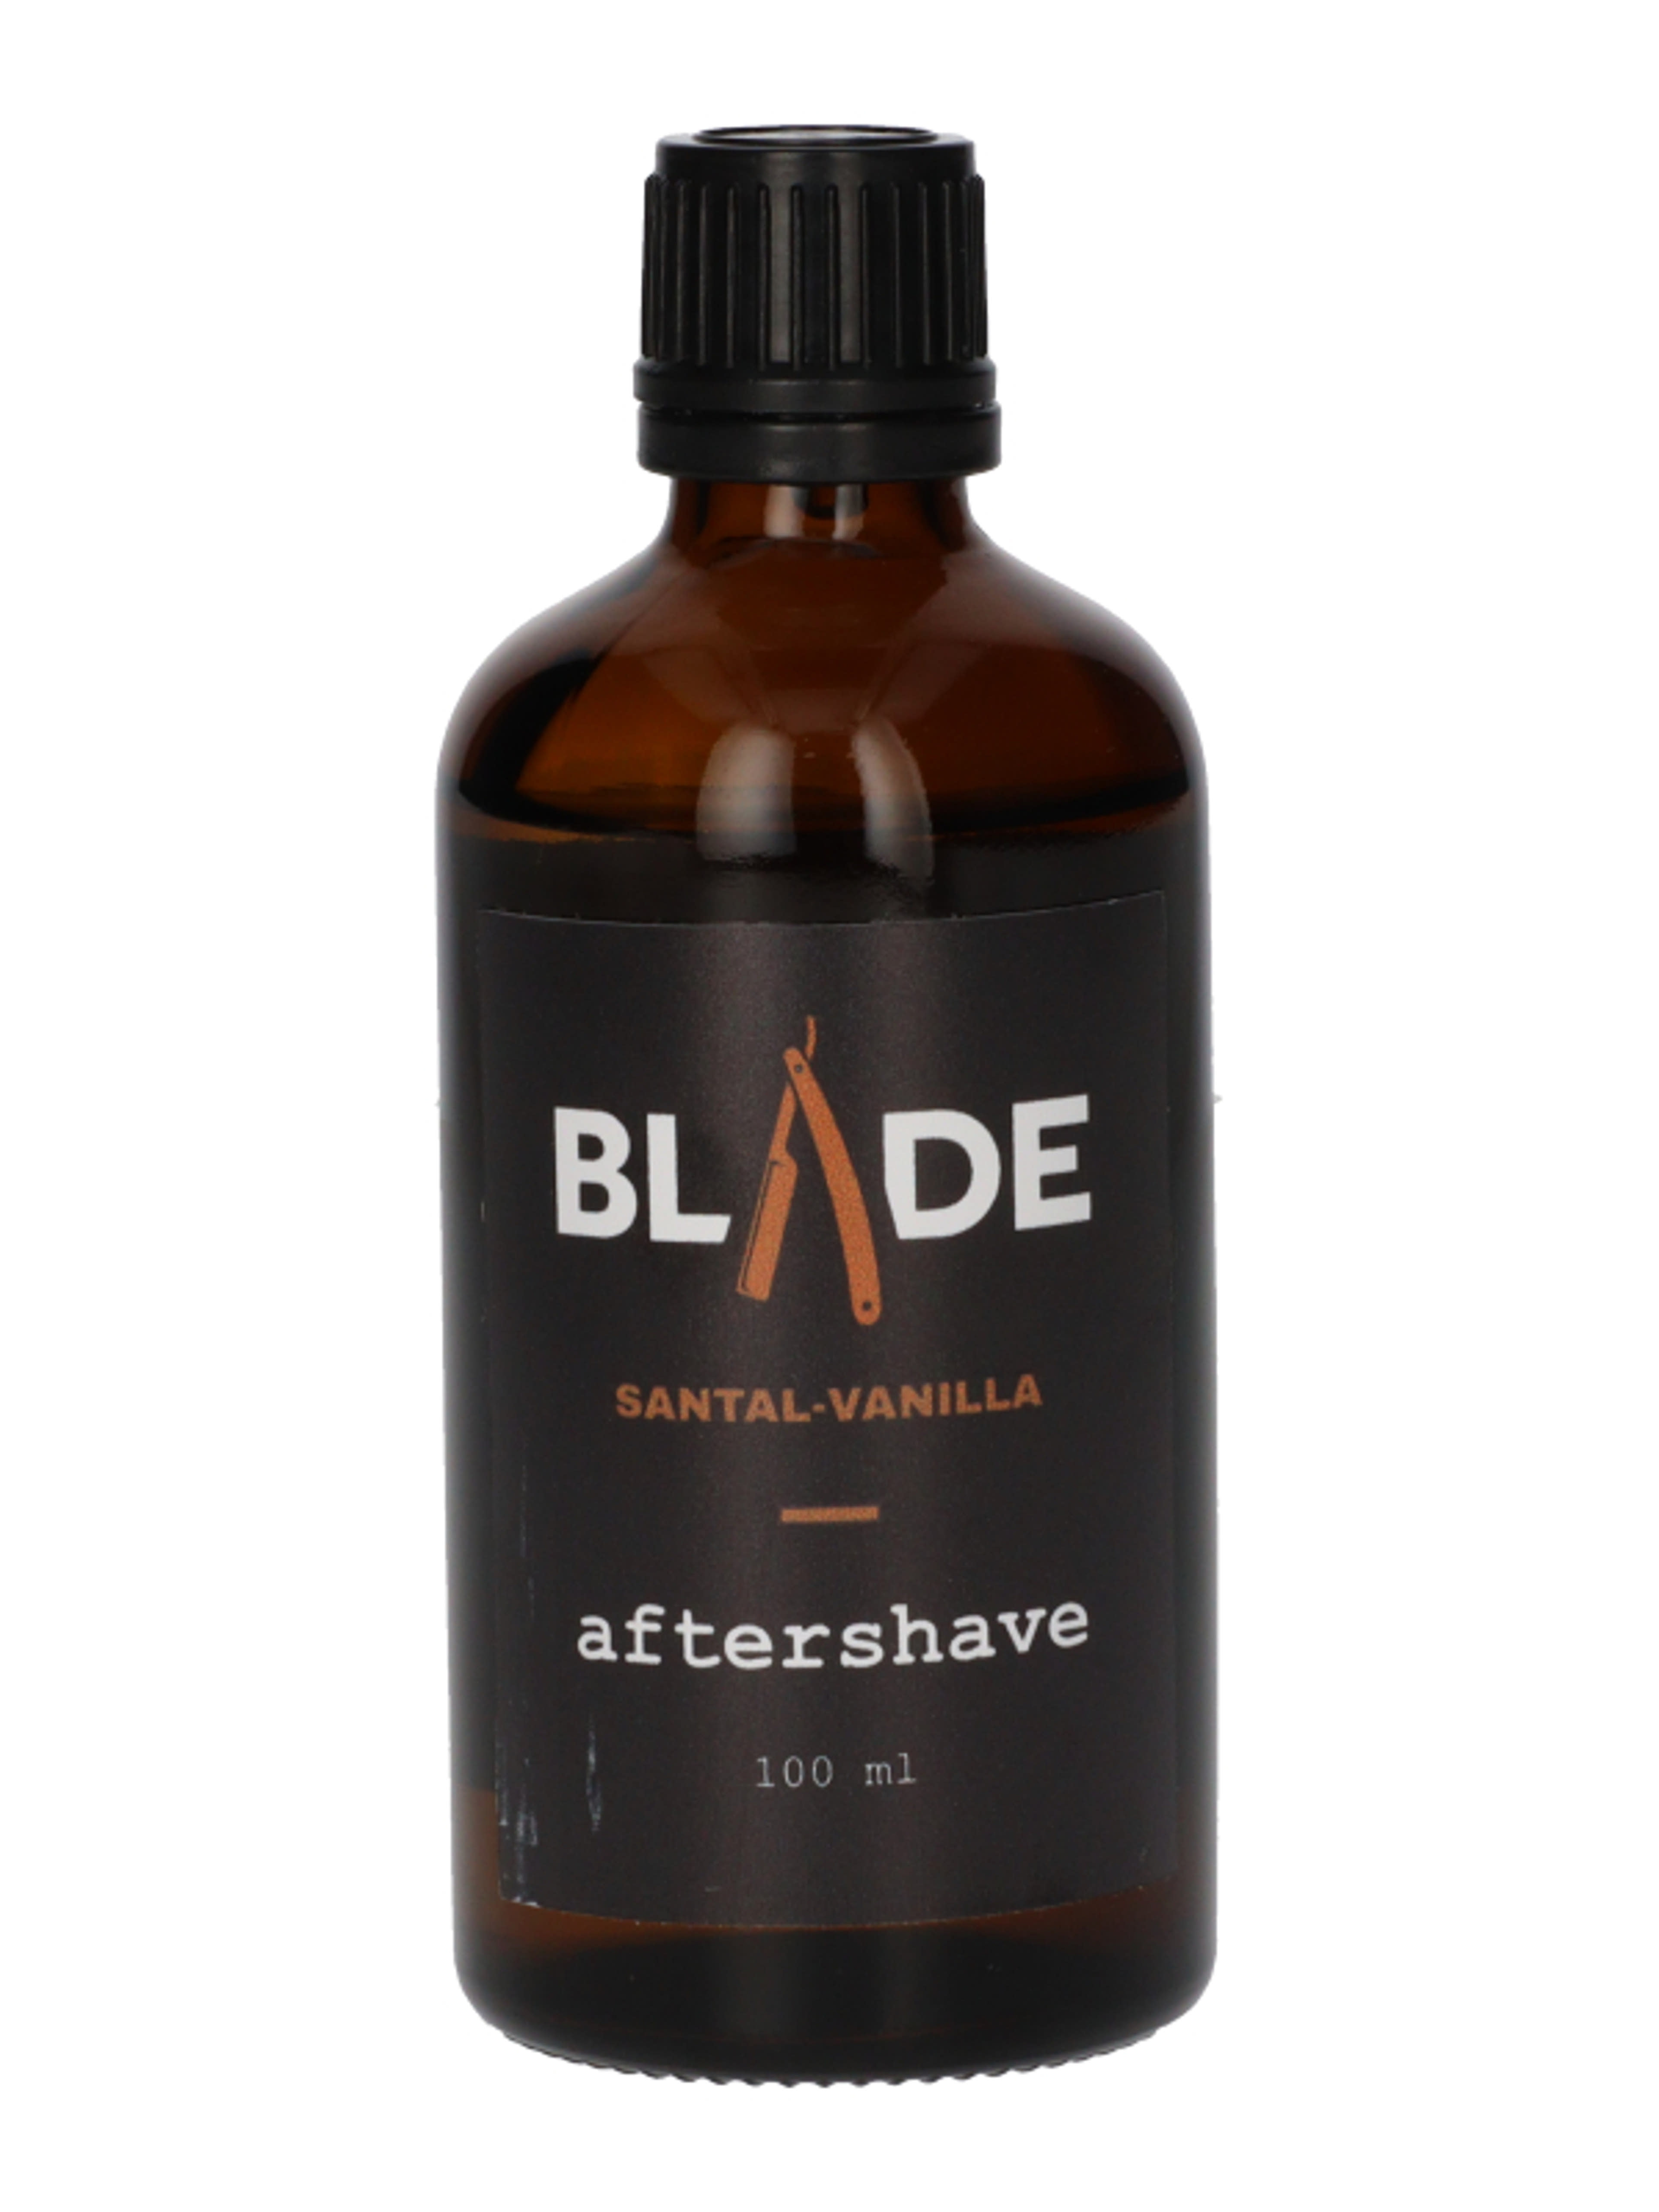 Blade after shave szantál-vanília - 100 ml